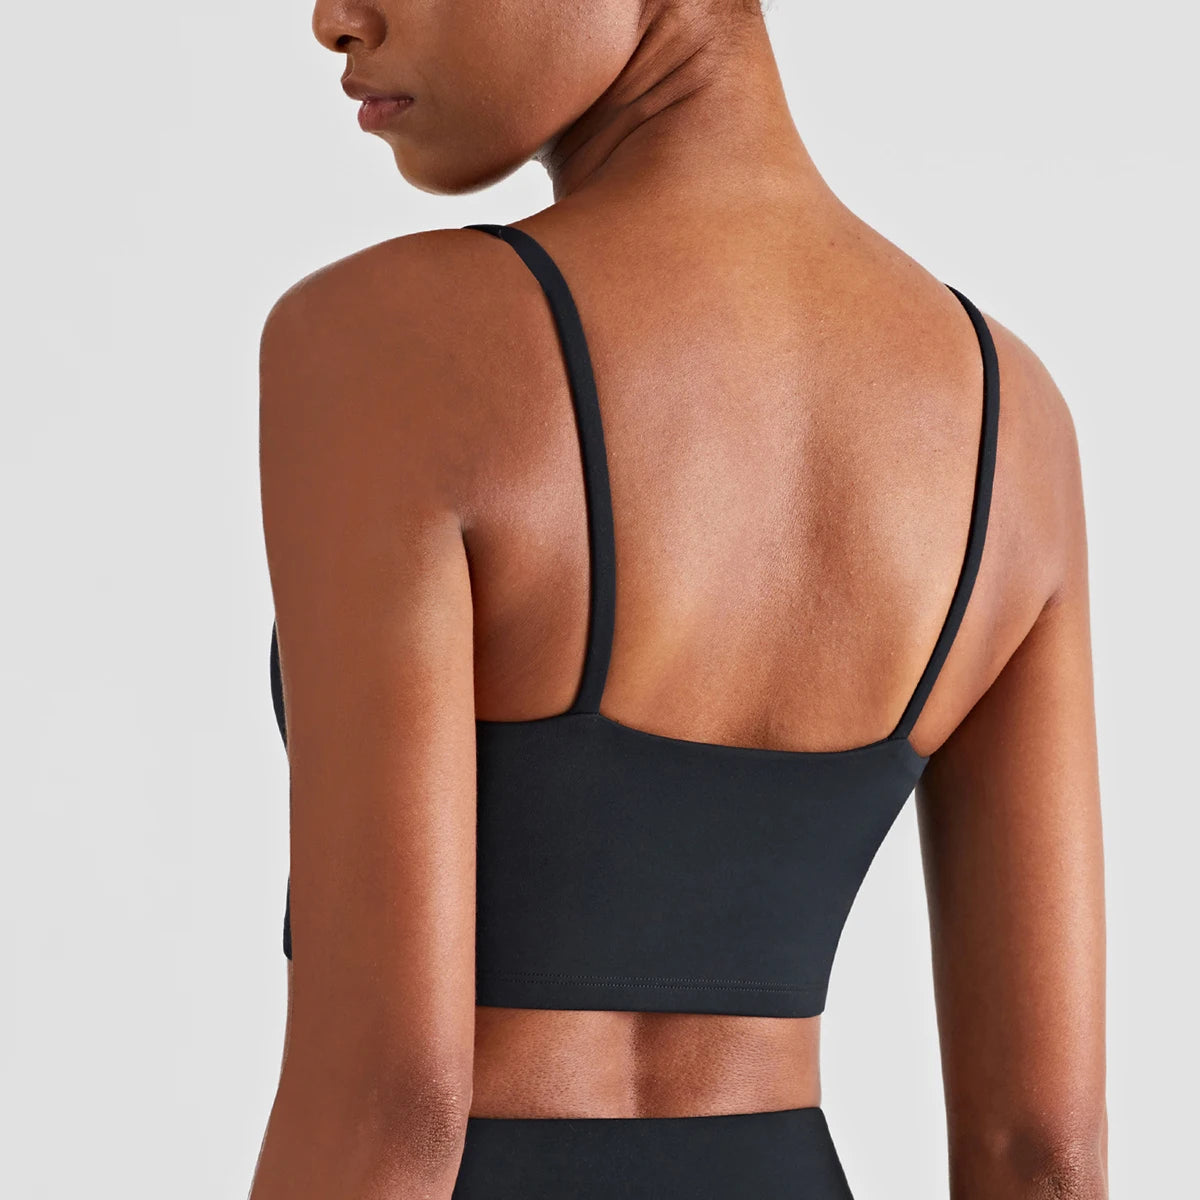 Suspenders Yoga Tank Tops for Fitness Naked Feel Sport Bra Gym Vest KESLEY